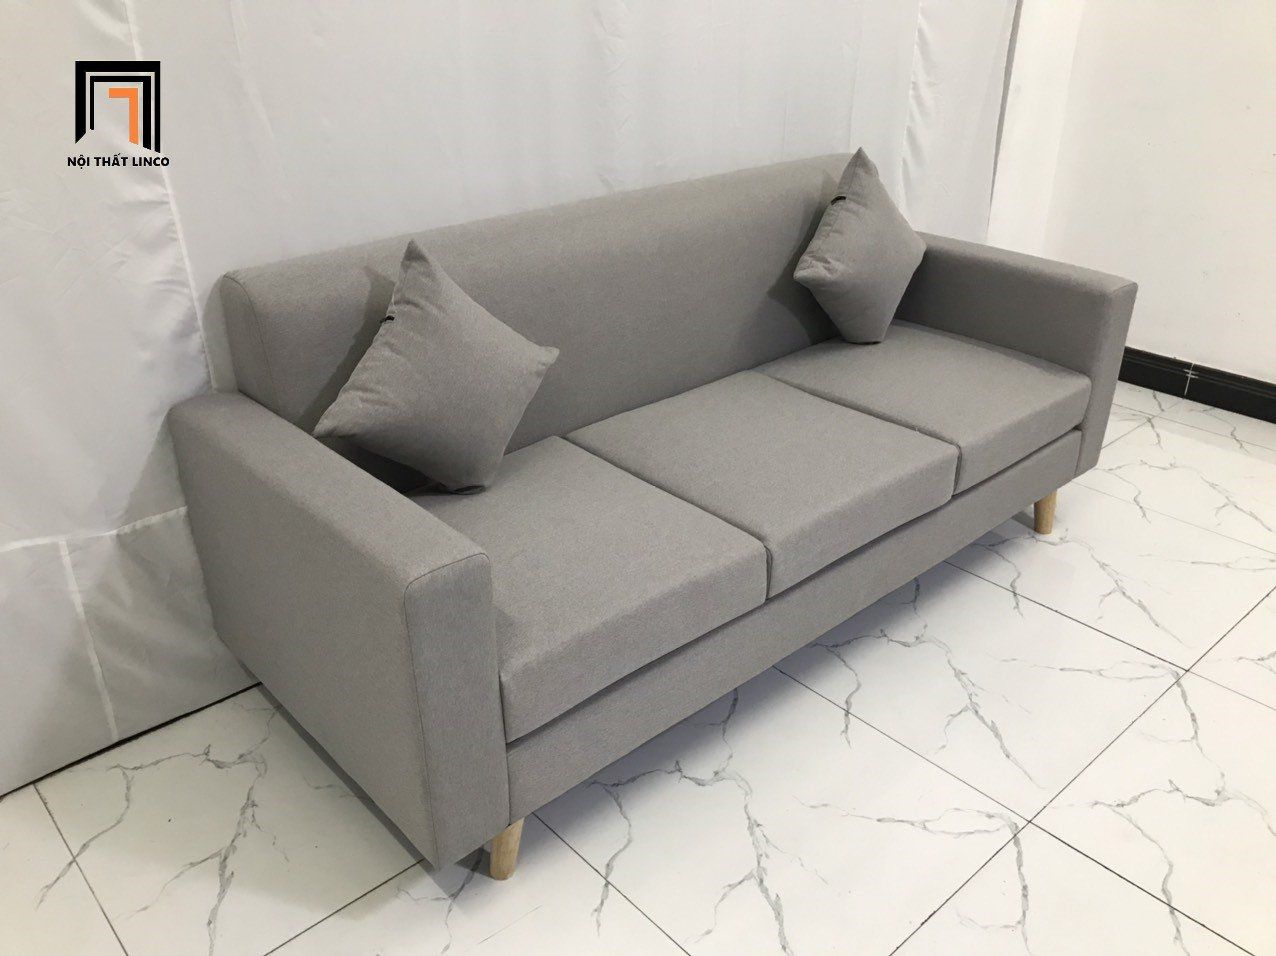  Bộ ghế sofa gia đình NS05 màu xám ghi trắng dài 1m9 giá rẻ 